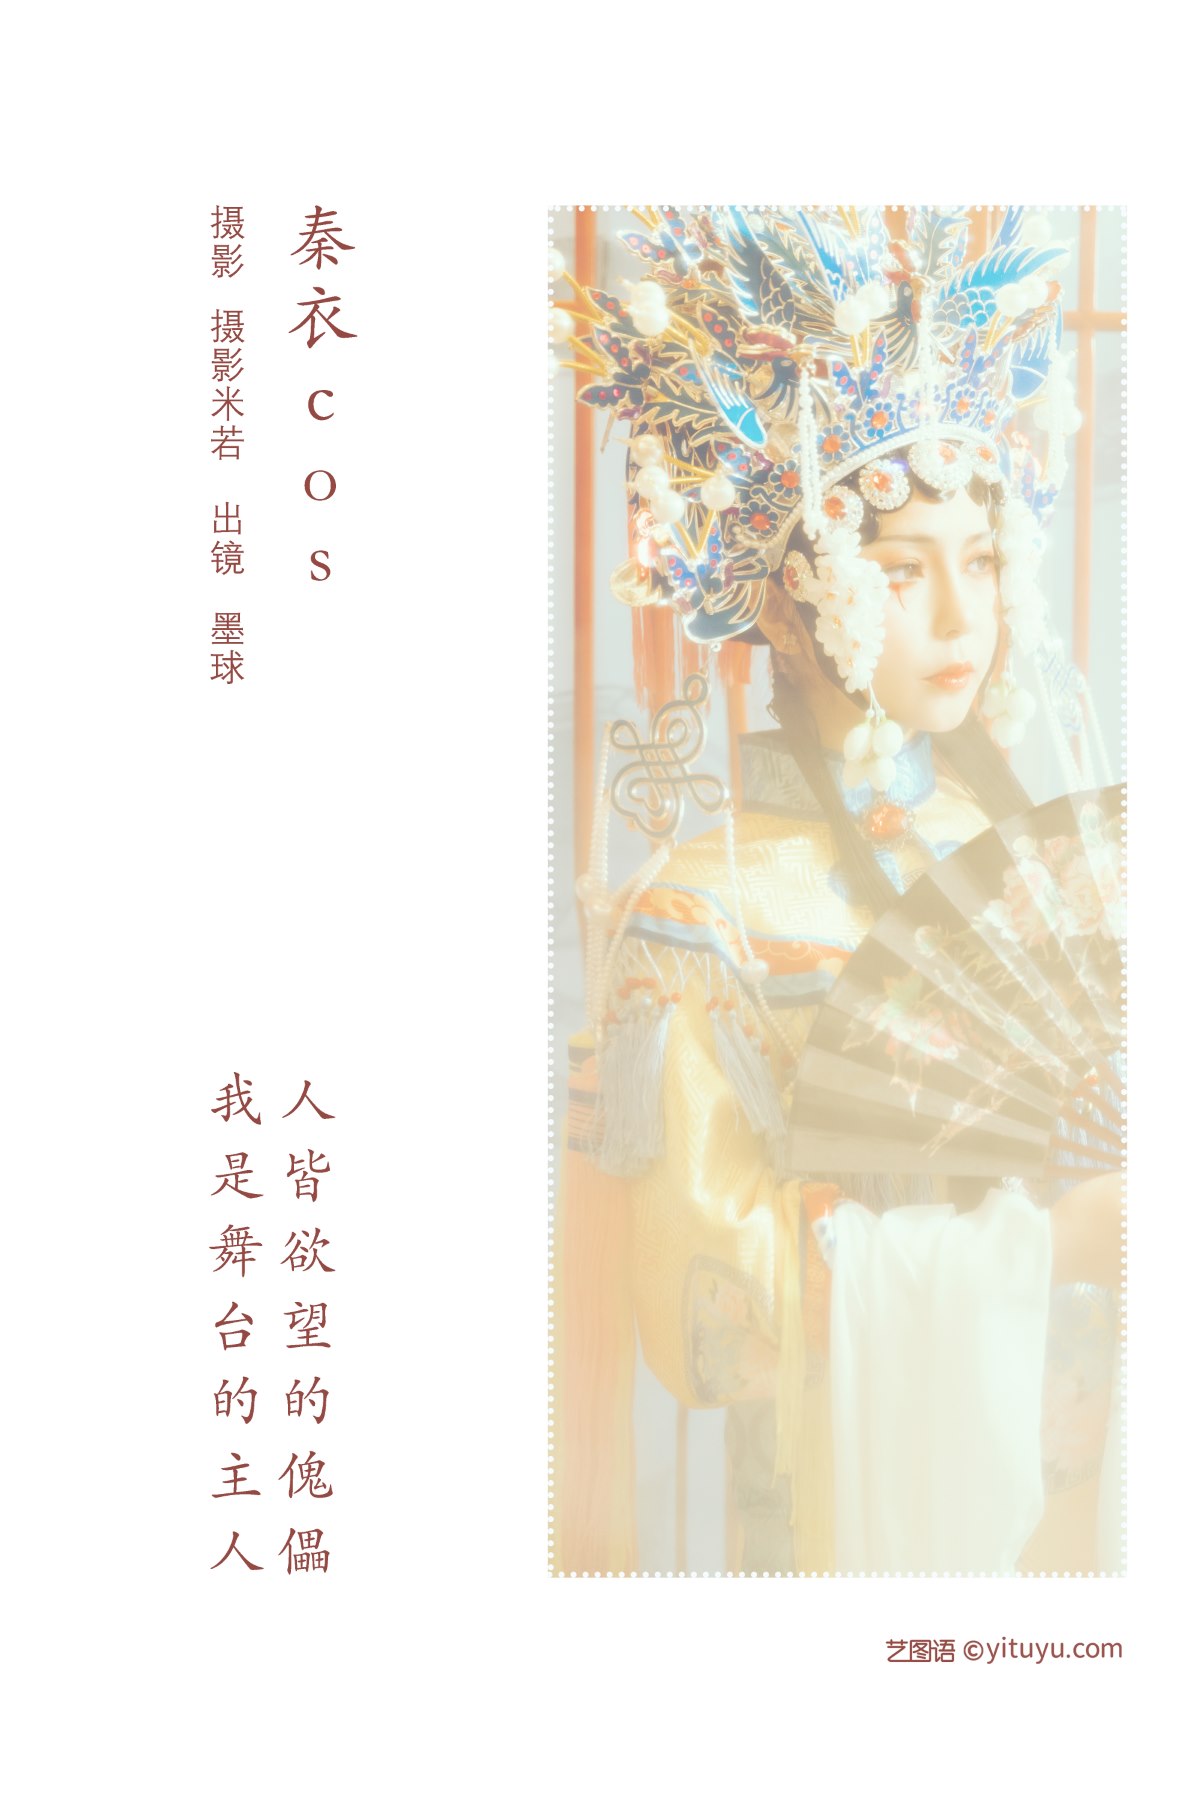 YiTuYu艺图语 Vol 2151 Qian Mo Hong Chen 0001 2789883767.jpg